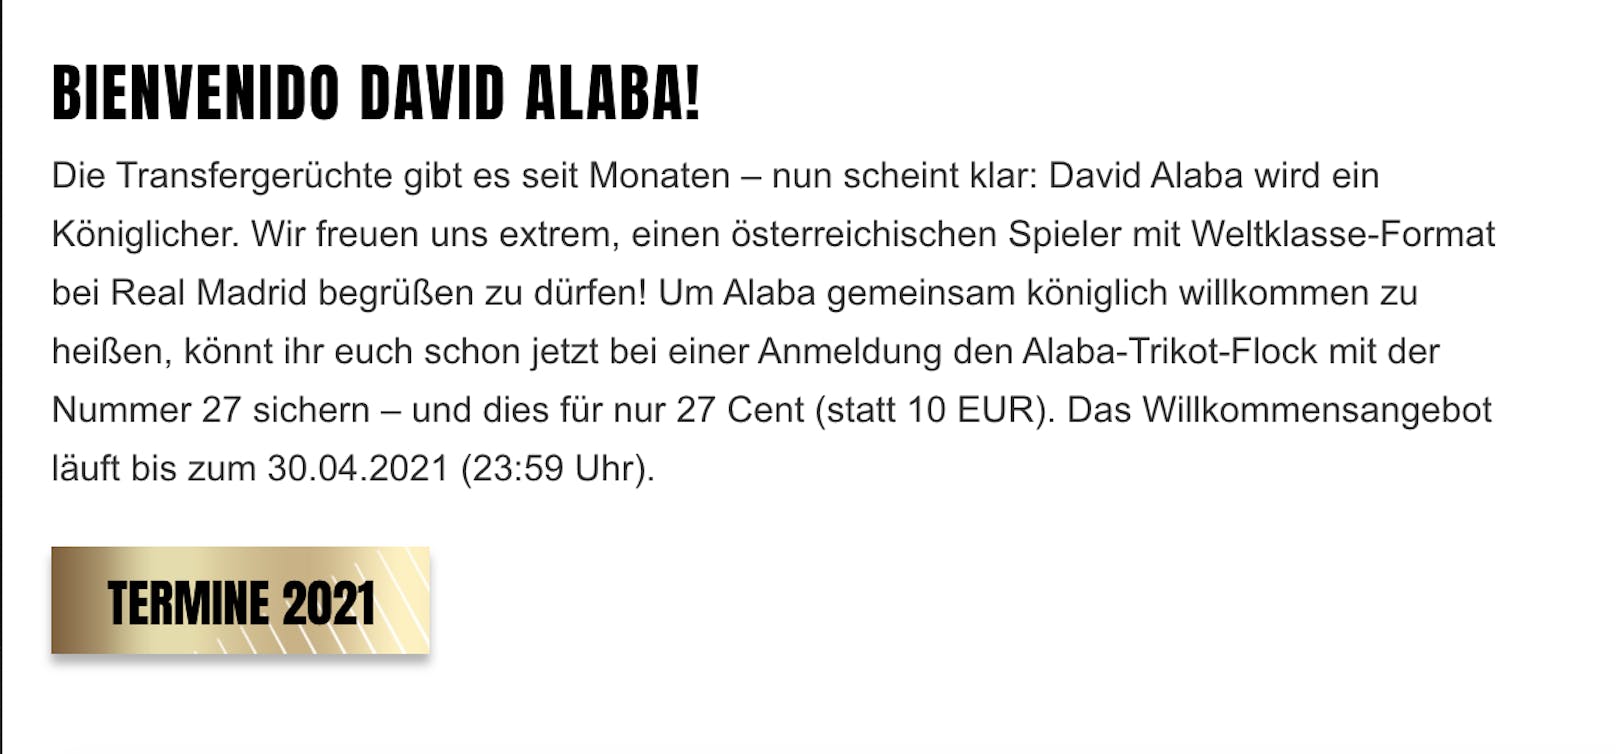 David Alaba wird vorgestellt.